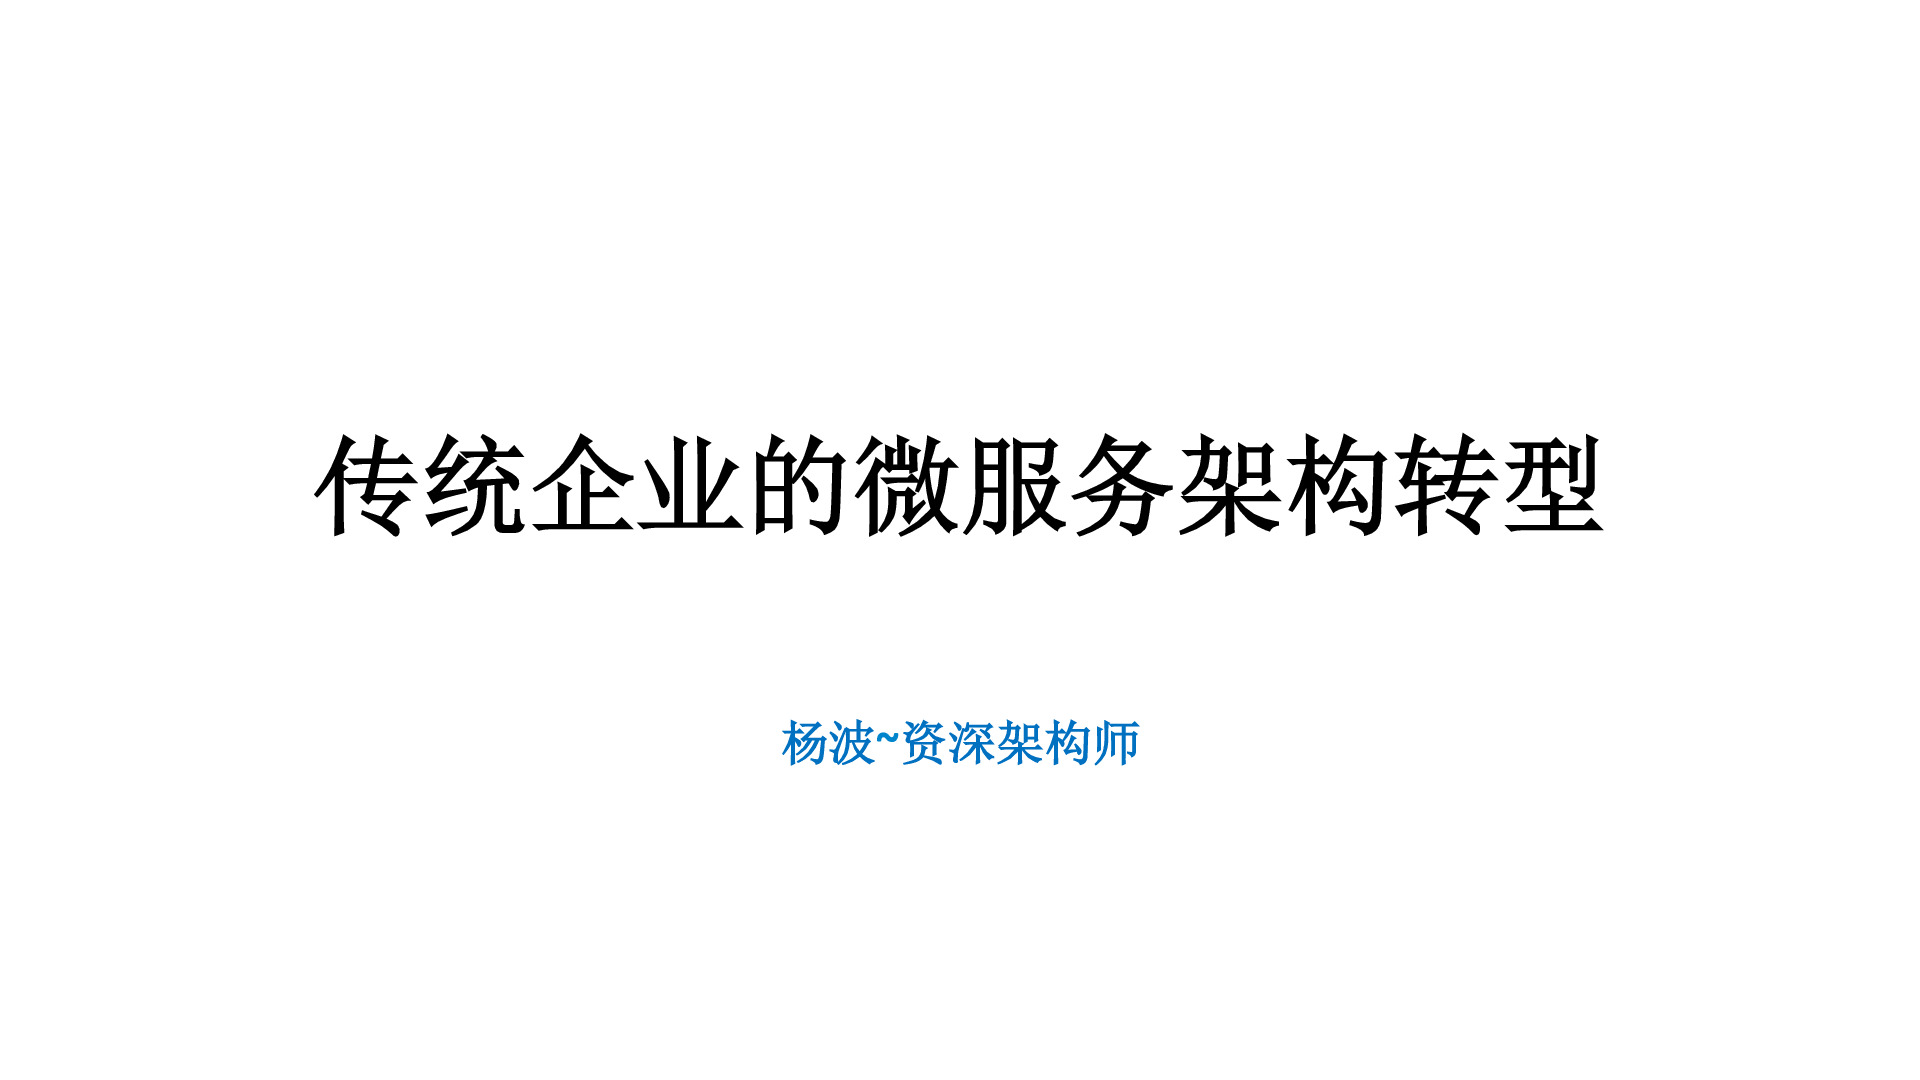 杨波-传统企业的微服务架构转型